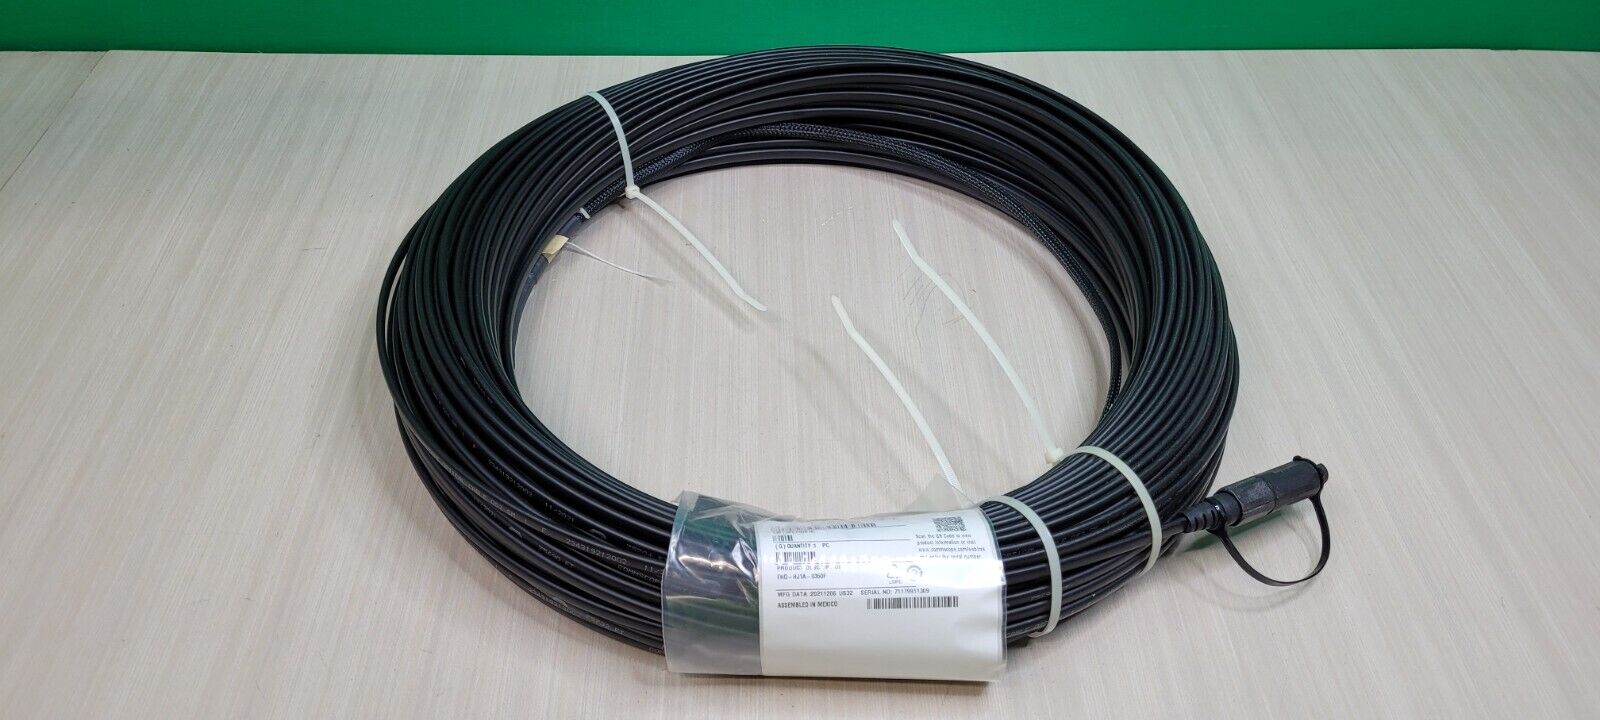 COMMSCOPE FHD Series FHD-HJ1D-0350F Fiber Optic Drop Cable SC/APC Flat, 350 ft